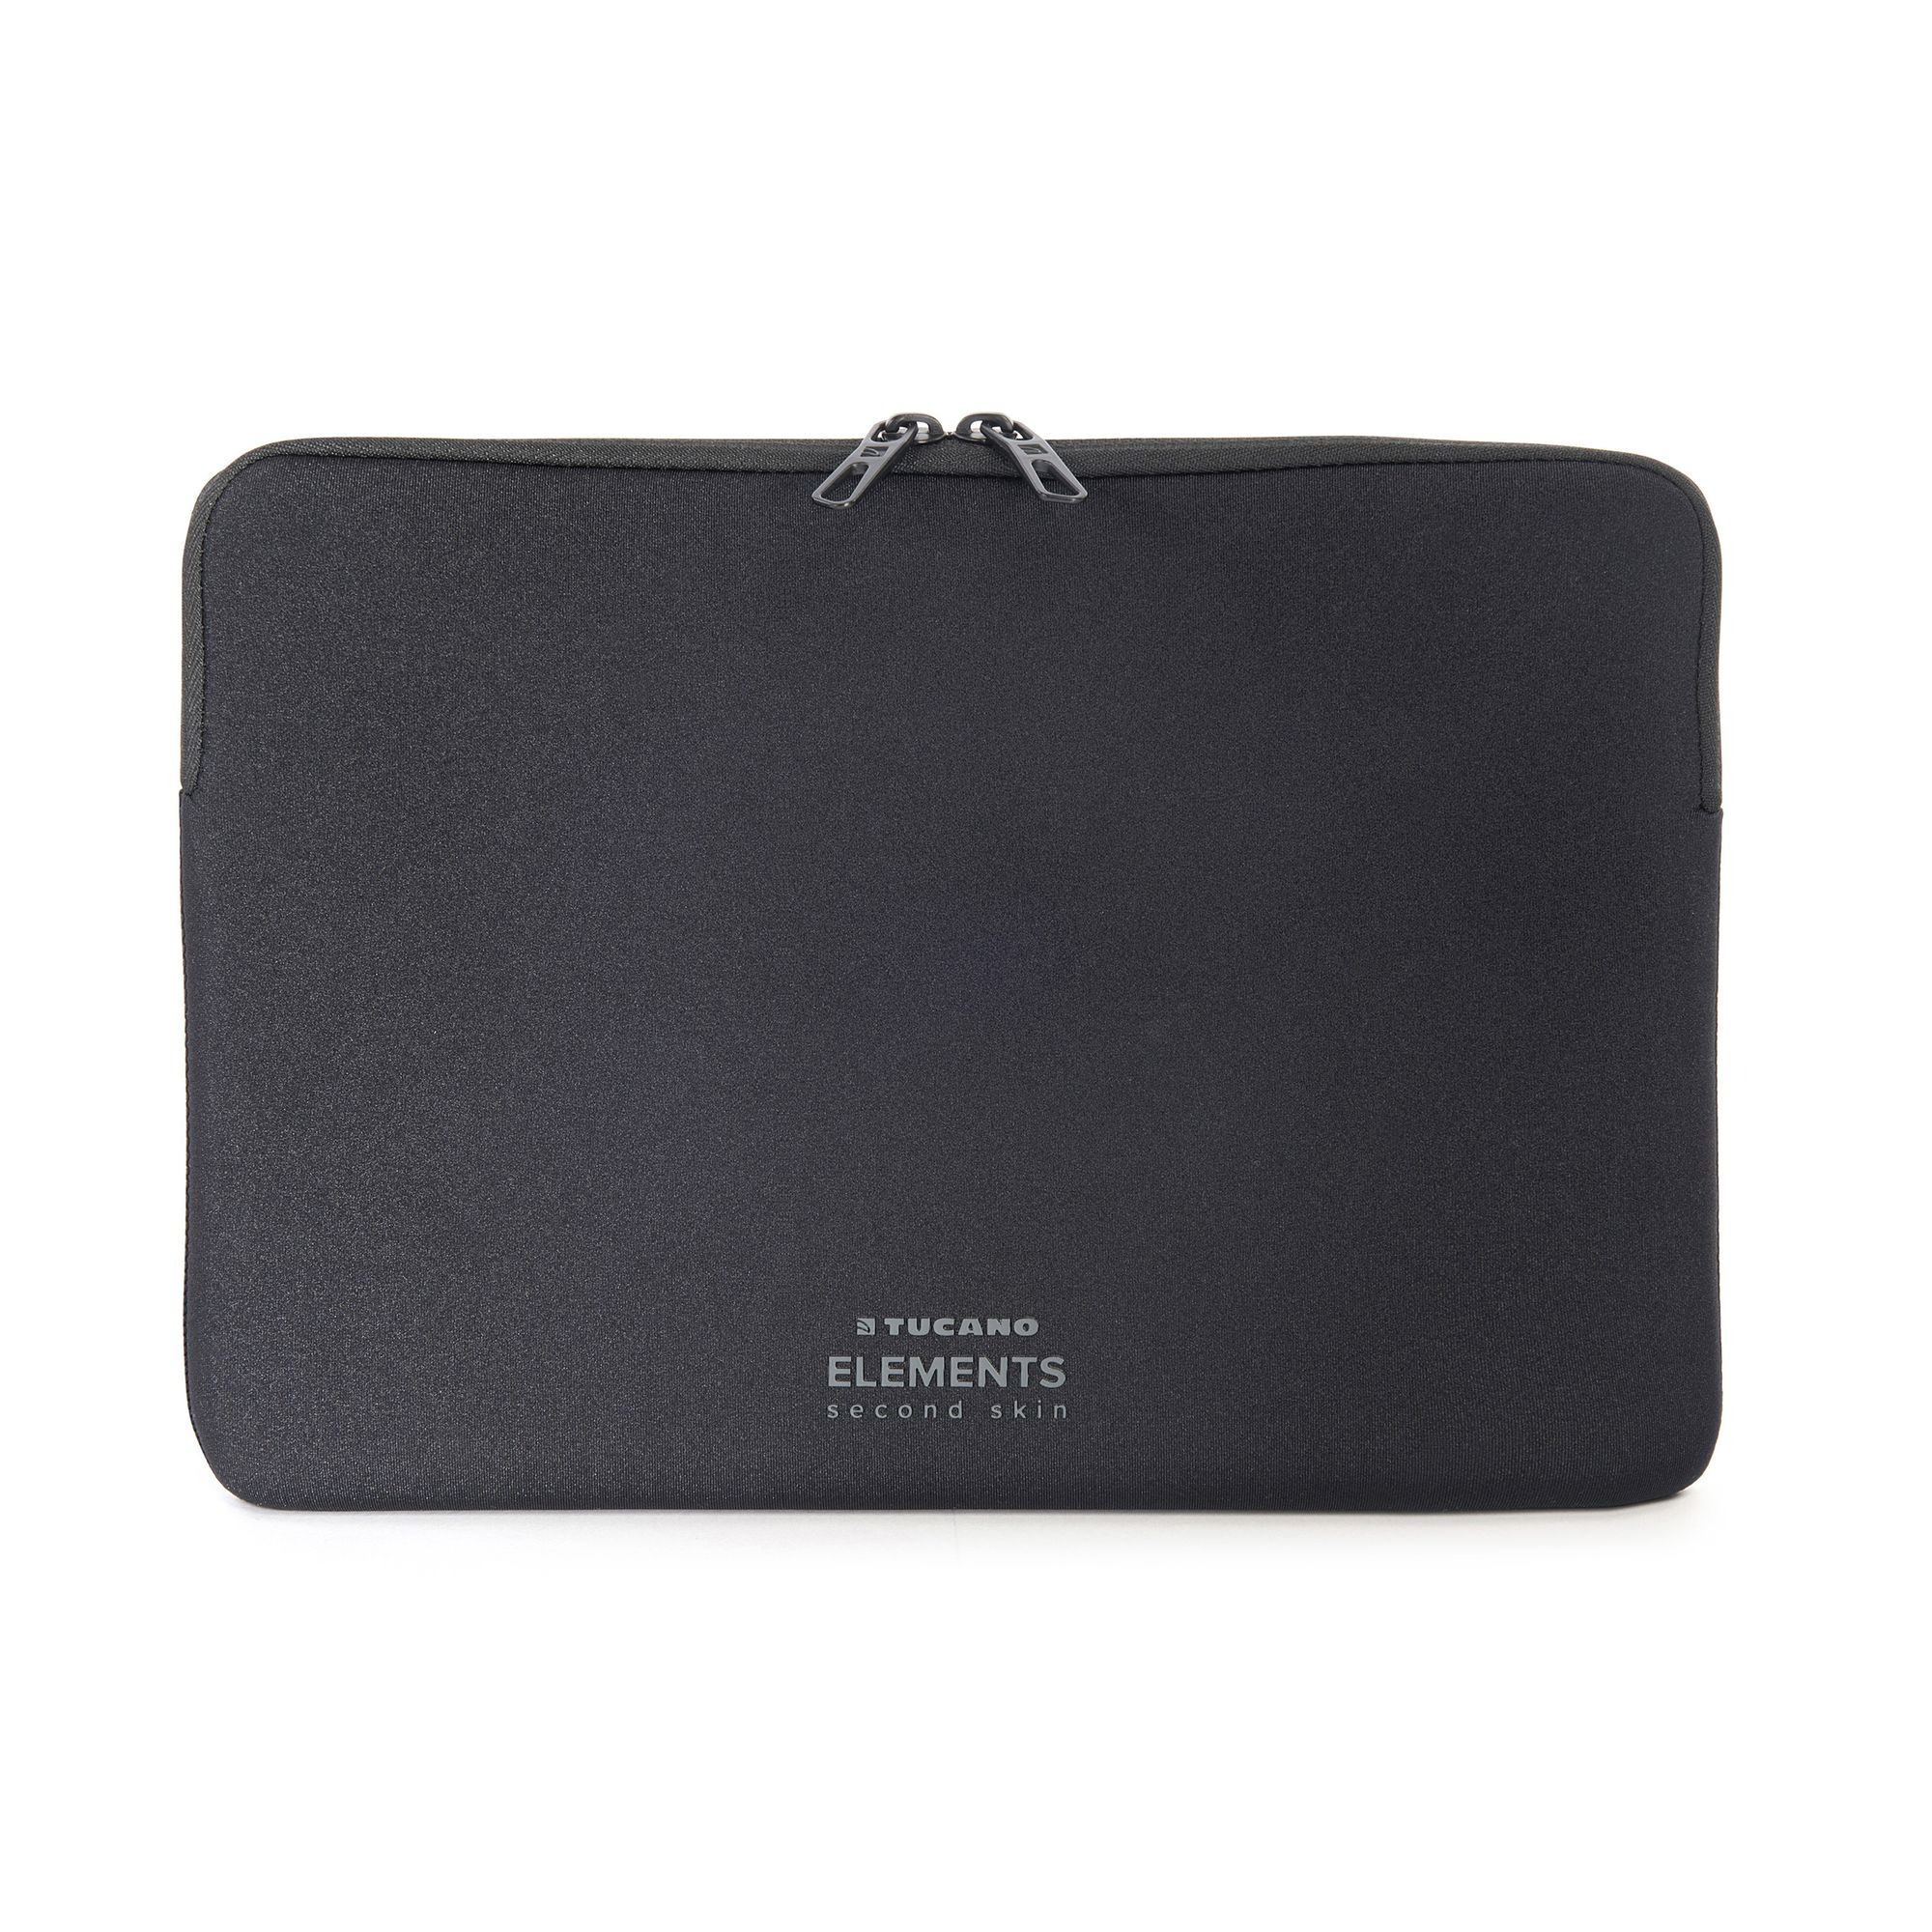 Sleeve Notebook Apple TUCANO Skin Schwarz Tasche Elements Second für Neopren,